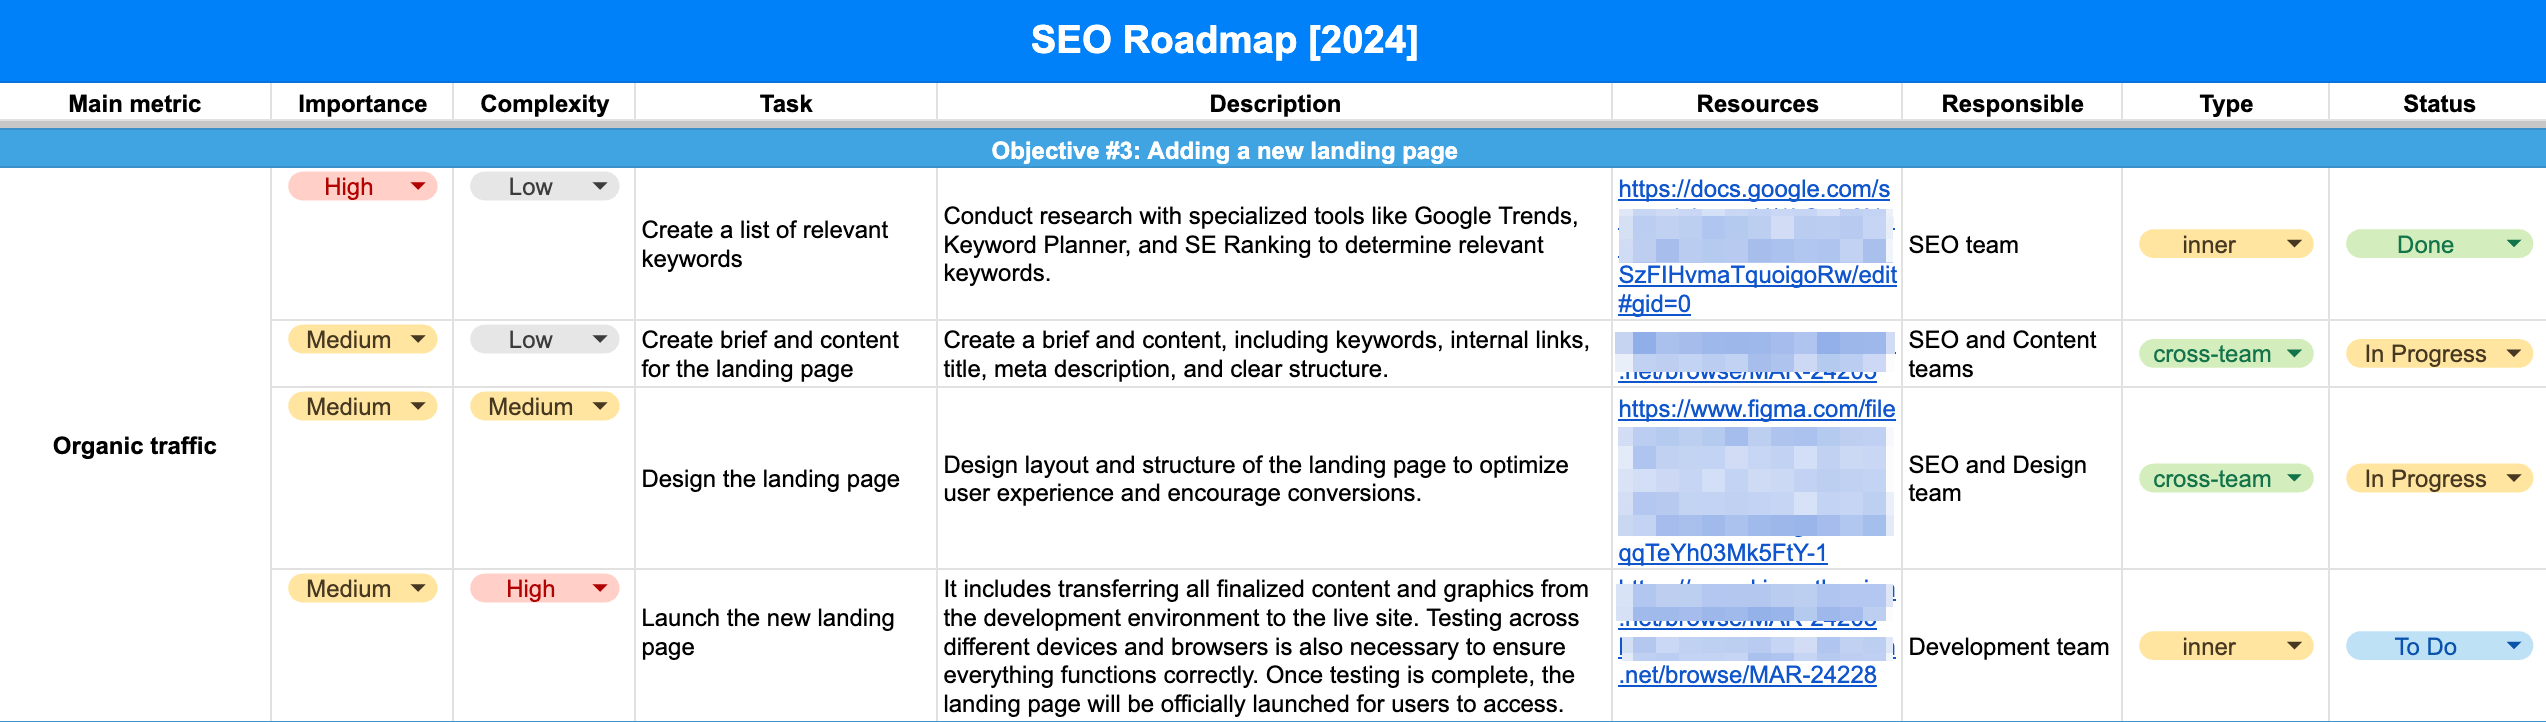 Objective description in SEO roadmap